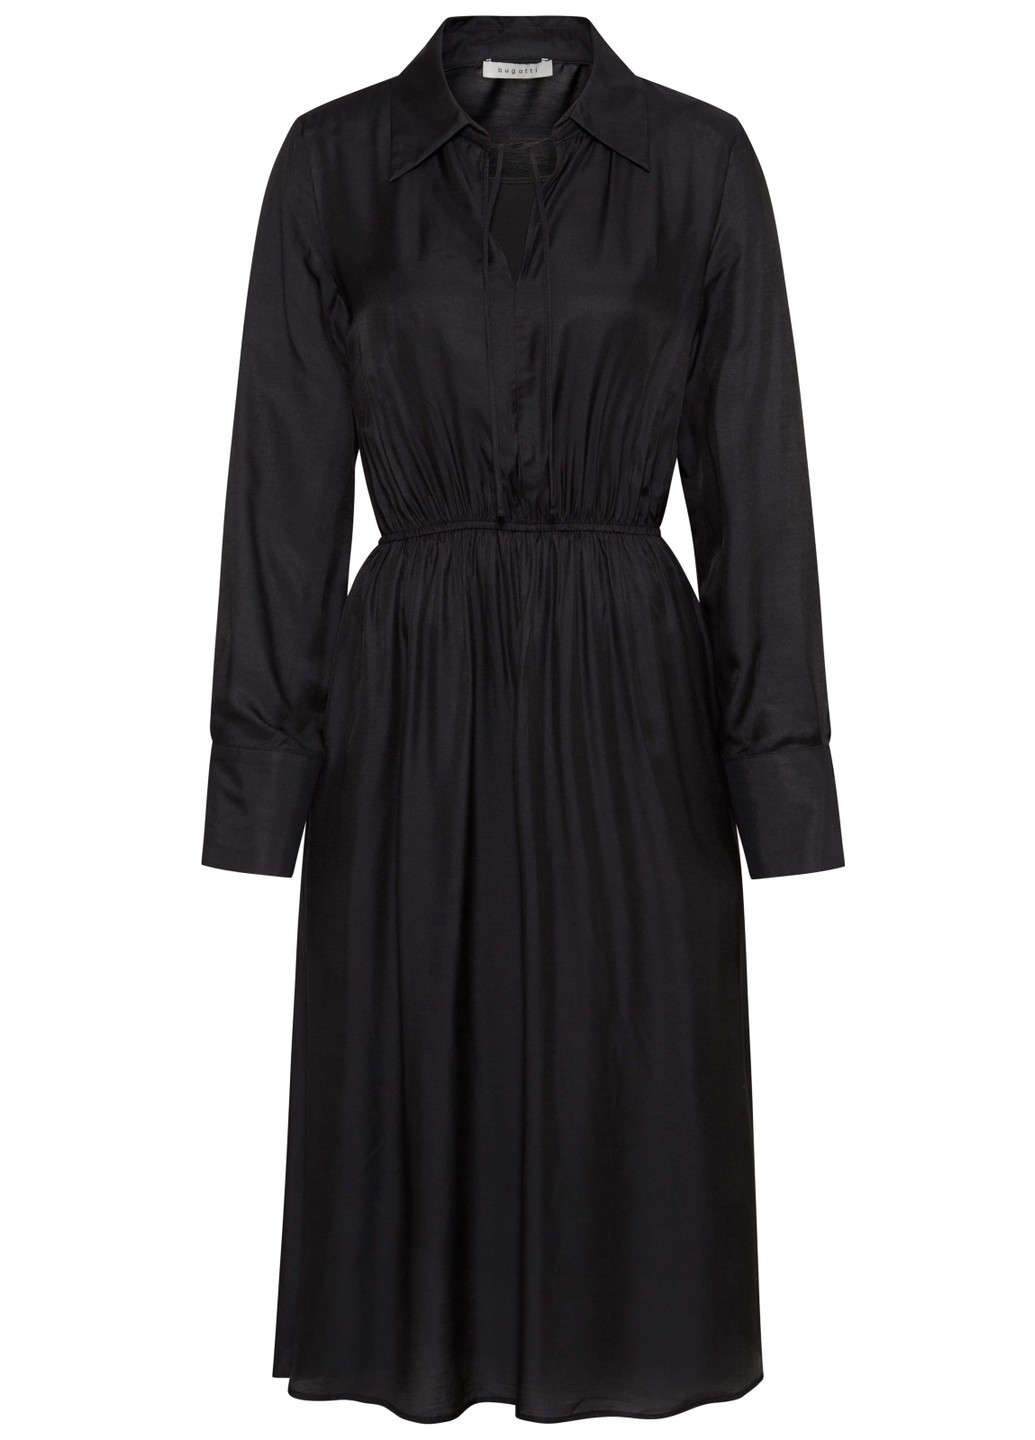 Черное повседневный женское платье 1194 90085/290 черный Bugatti